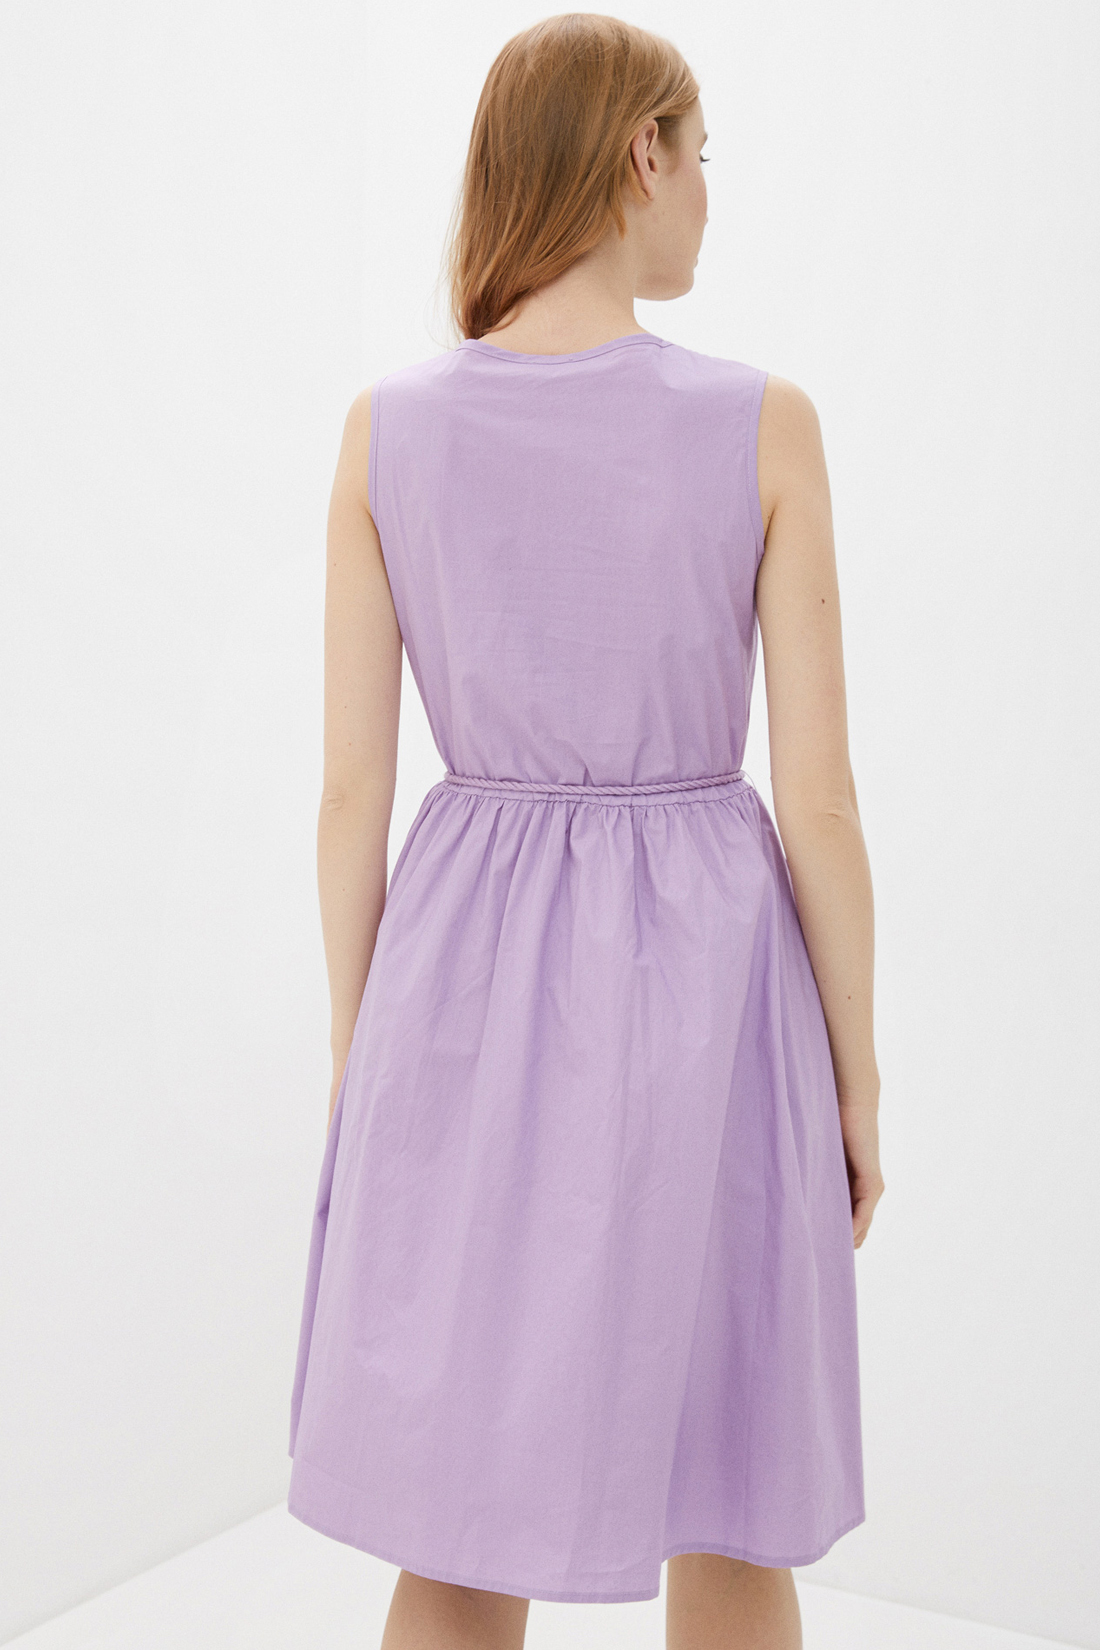 Платье (арт. baon B450063), размер L, цвет фиолетовый Платье (арт. baon B450063) - фото 2